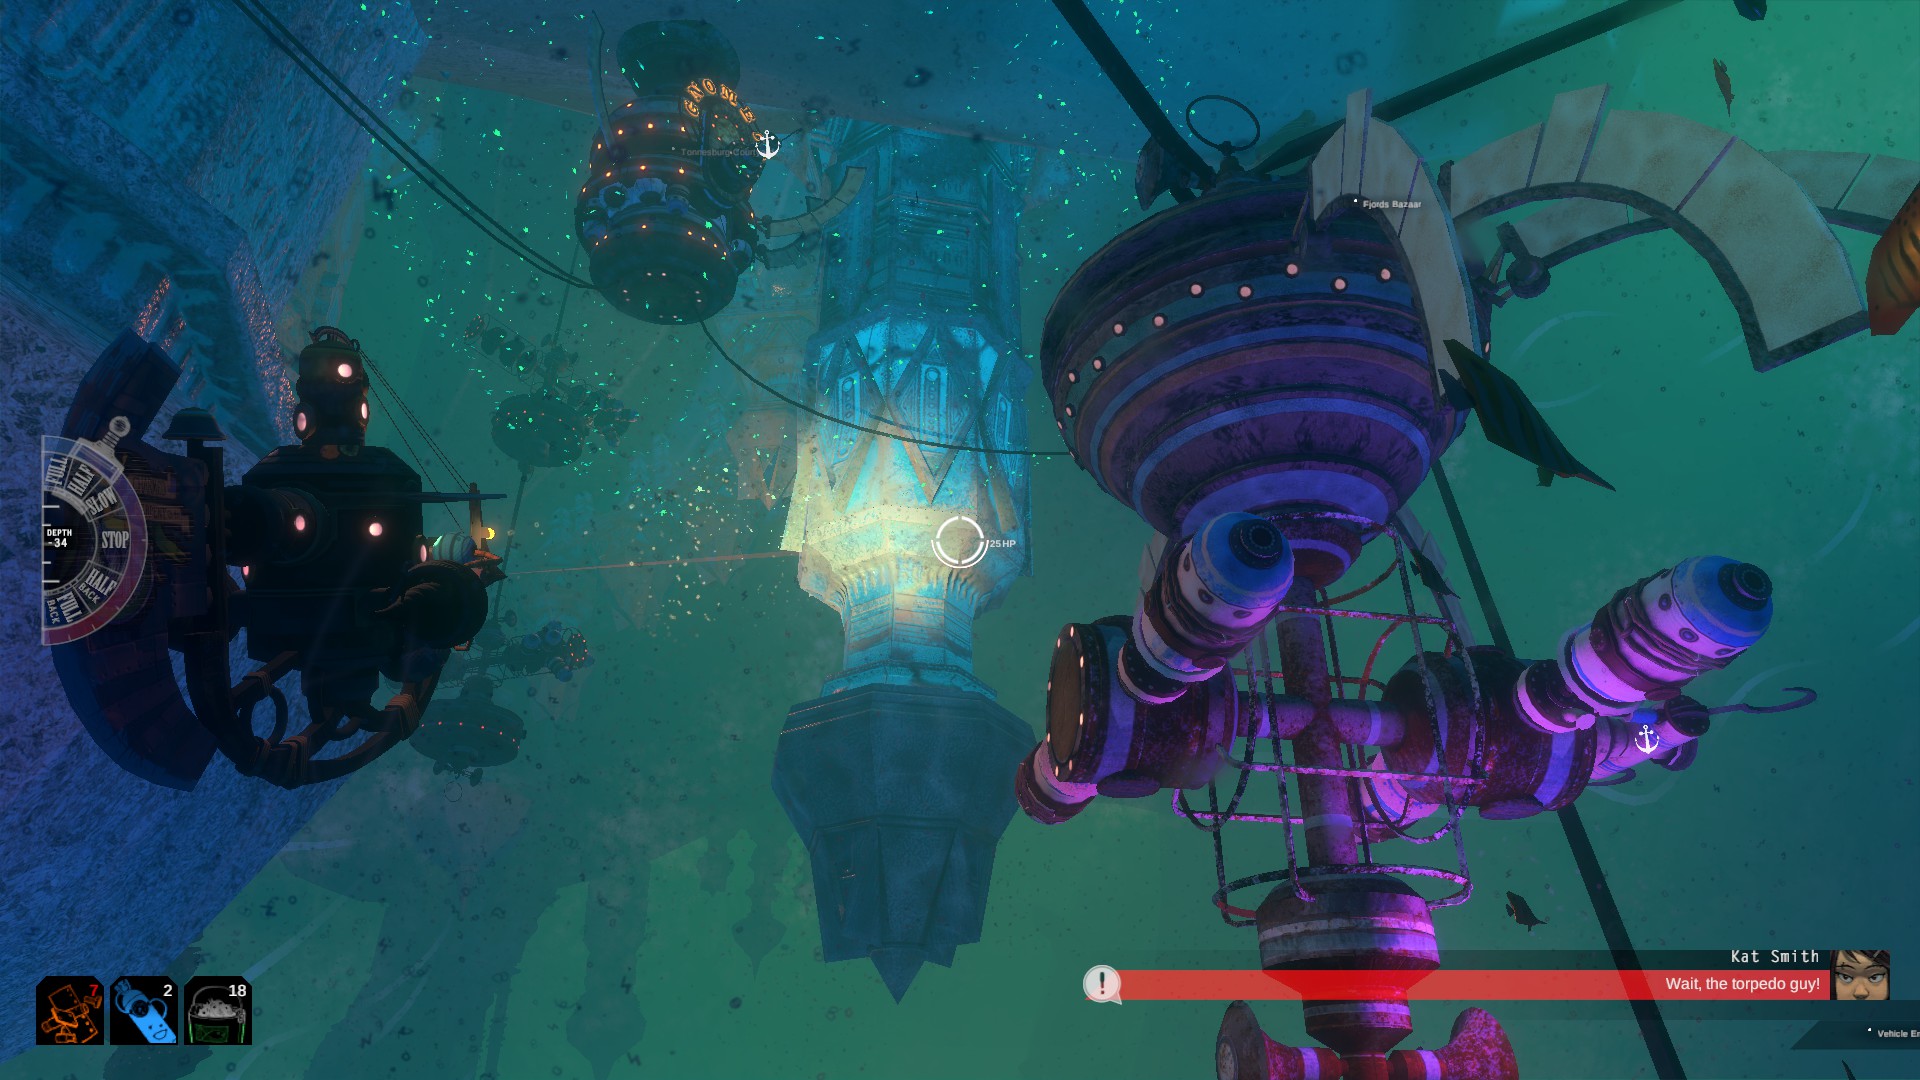 海底を進むオープンワールド型アクションゲーム Diluvion がsteamで2月に発売へ 文明崩壊後の世界を潜水艦で探索 Automaton